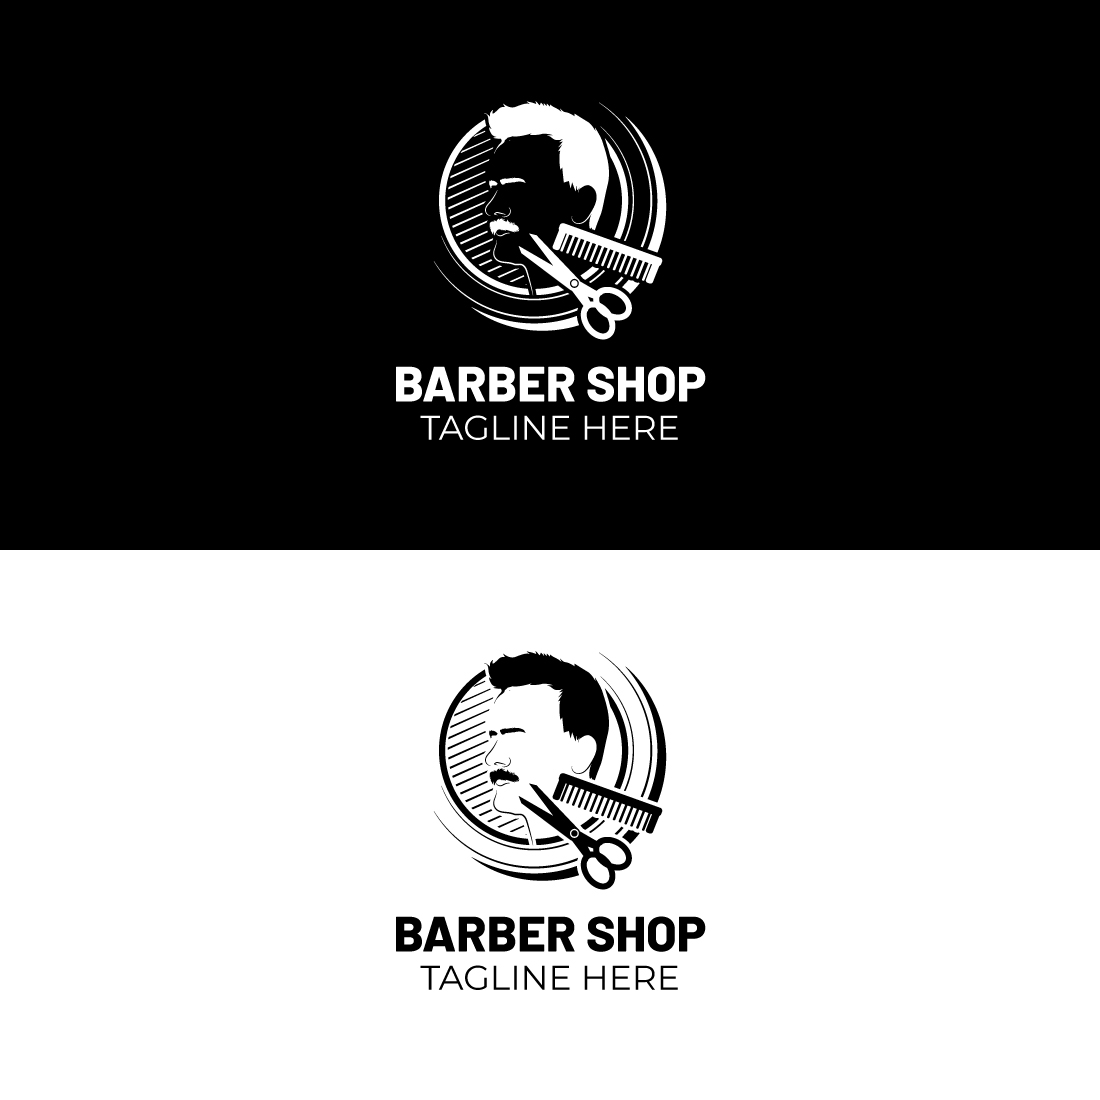 Barber Shop Logo cover image.